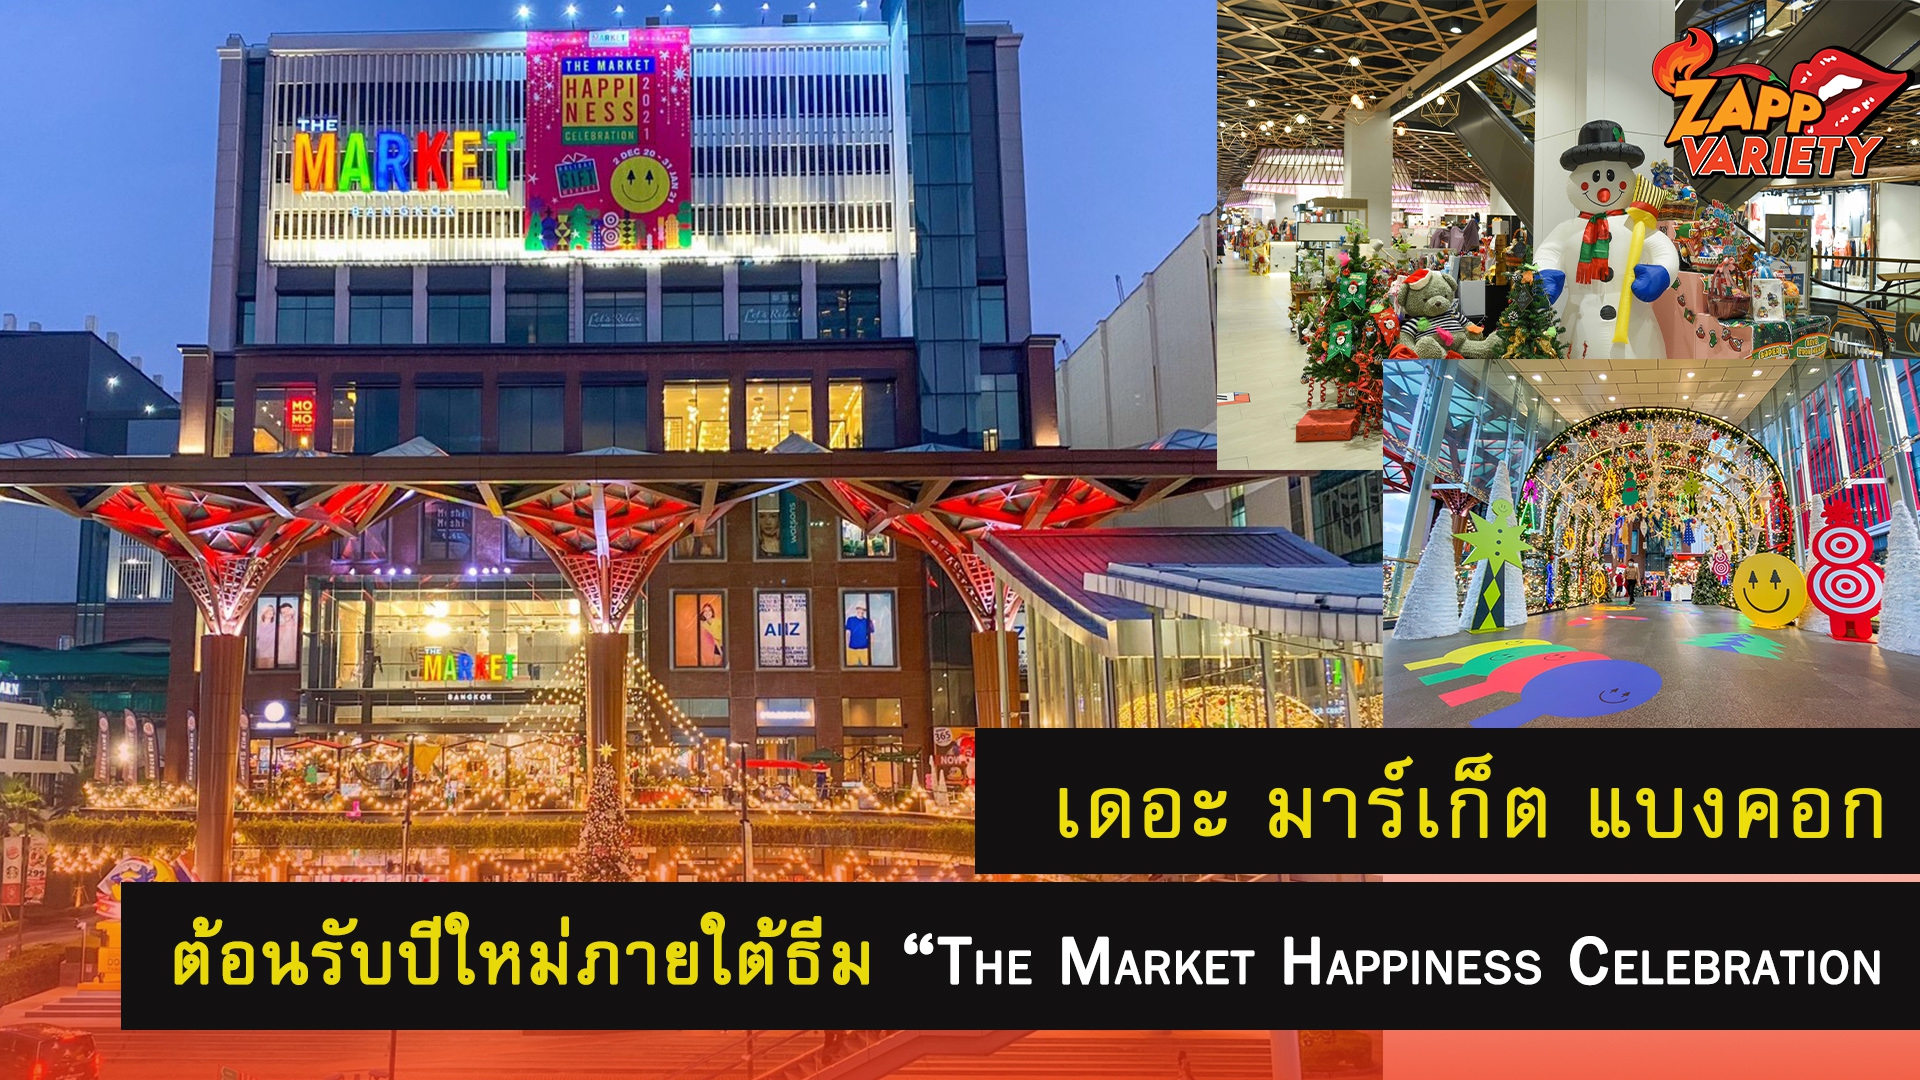 ศูนย์การค้า เดอะ มาร์เก็ต แบงคอก เติมเต็มความสุข สนุกสนาน เตรียมต้อนรับปีใหม่ ภายใต้ธีม “The Market Happiness Celebration 2021” วันนี้ – 31 ม.ค. 64